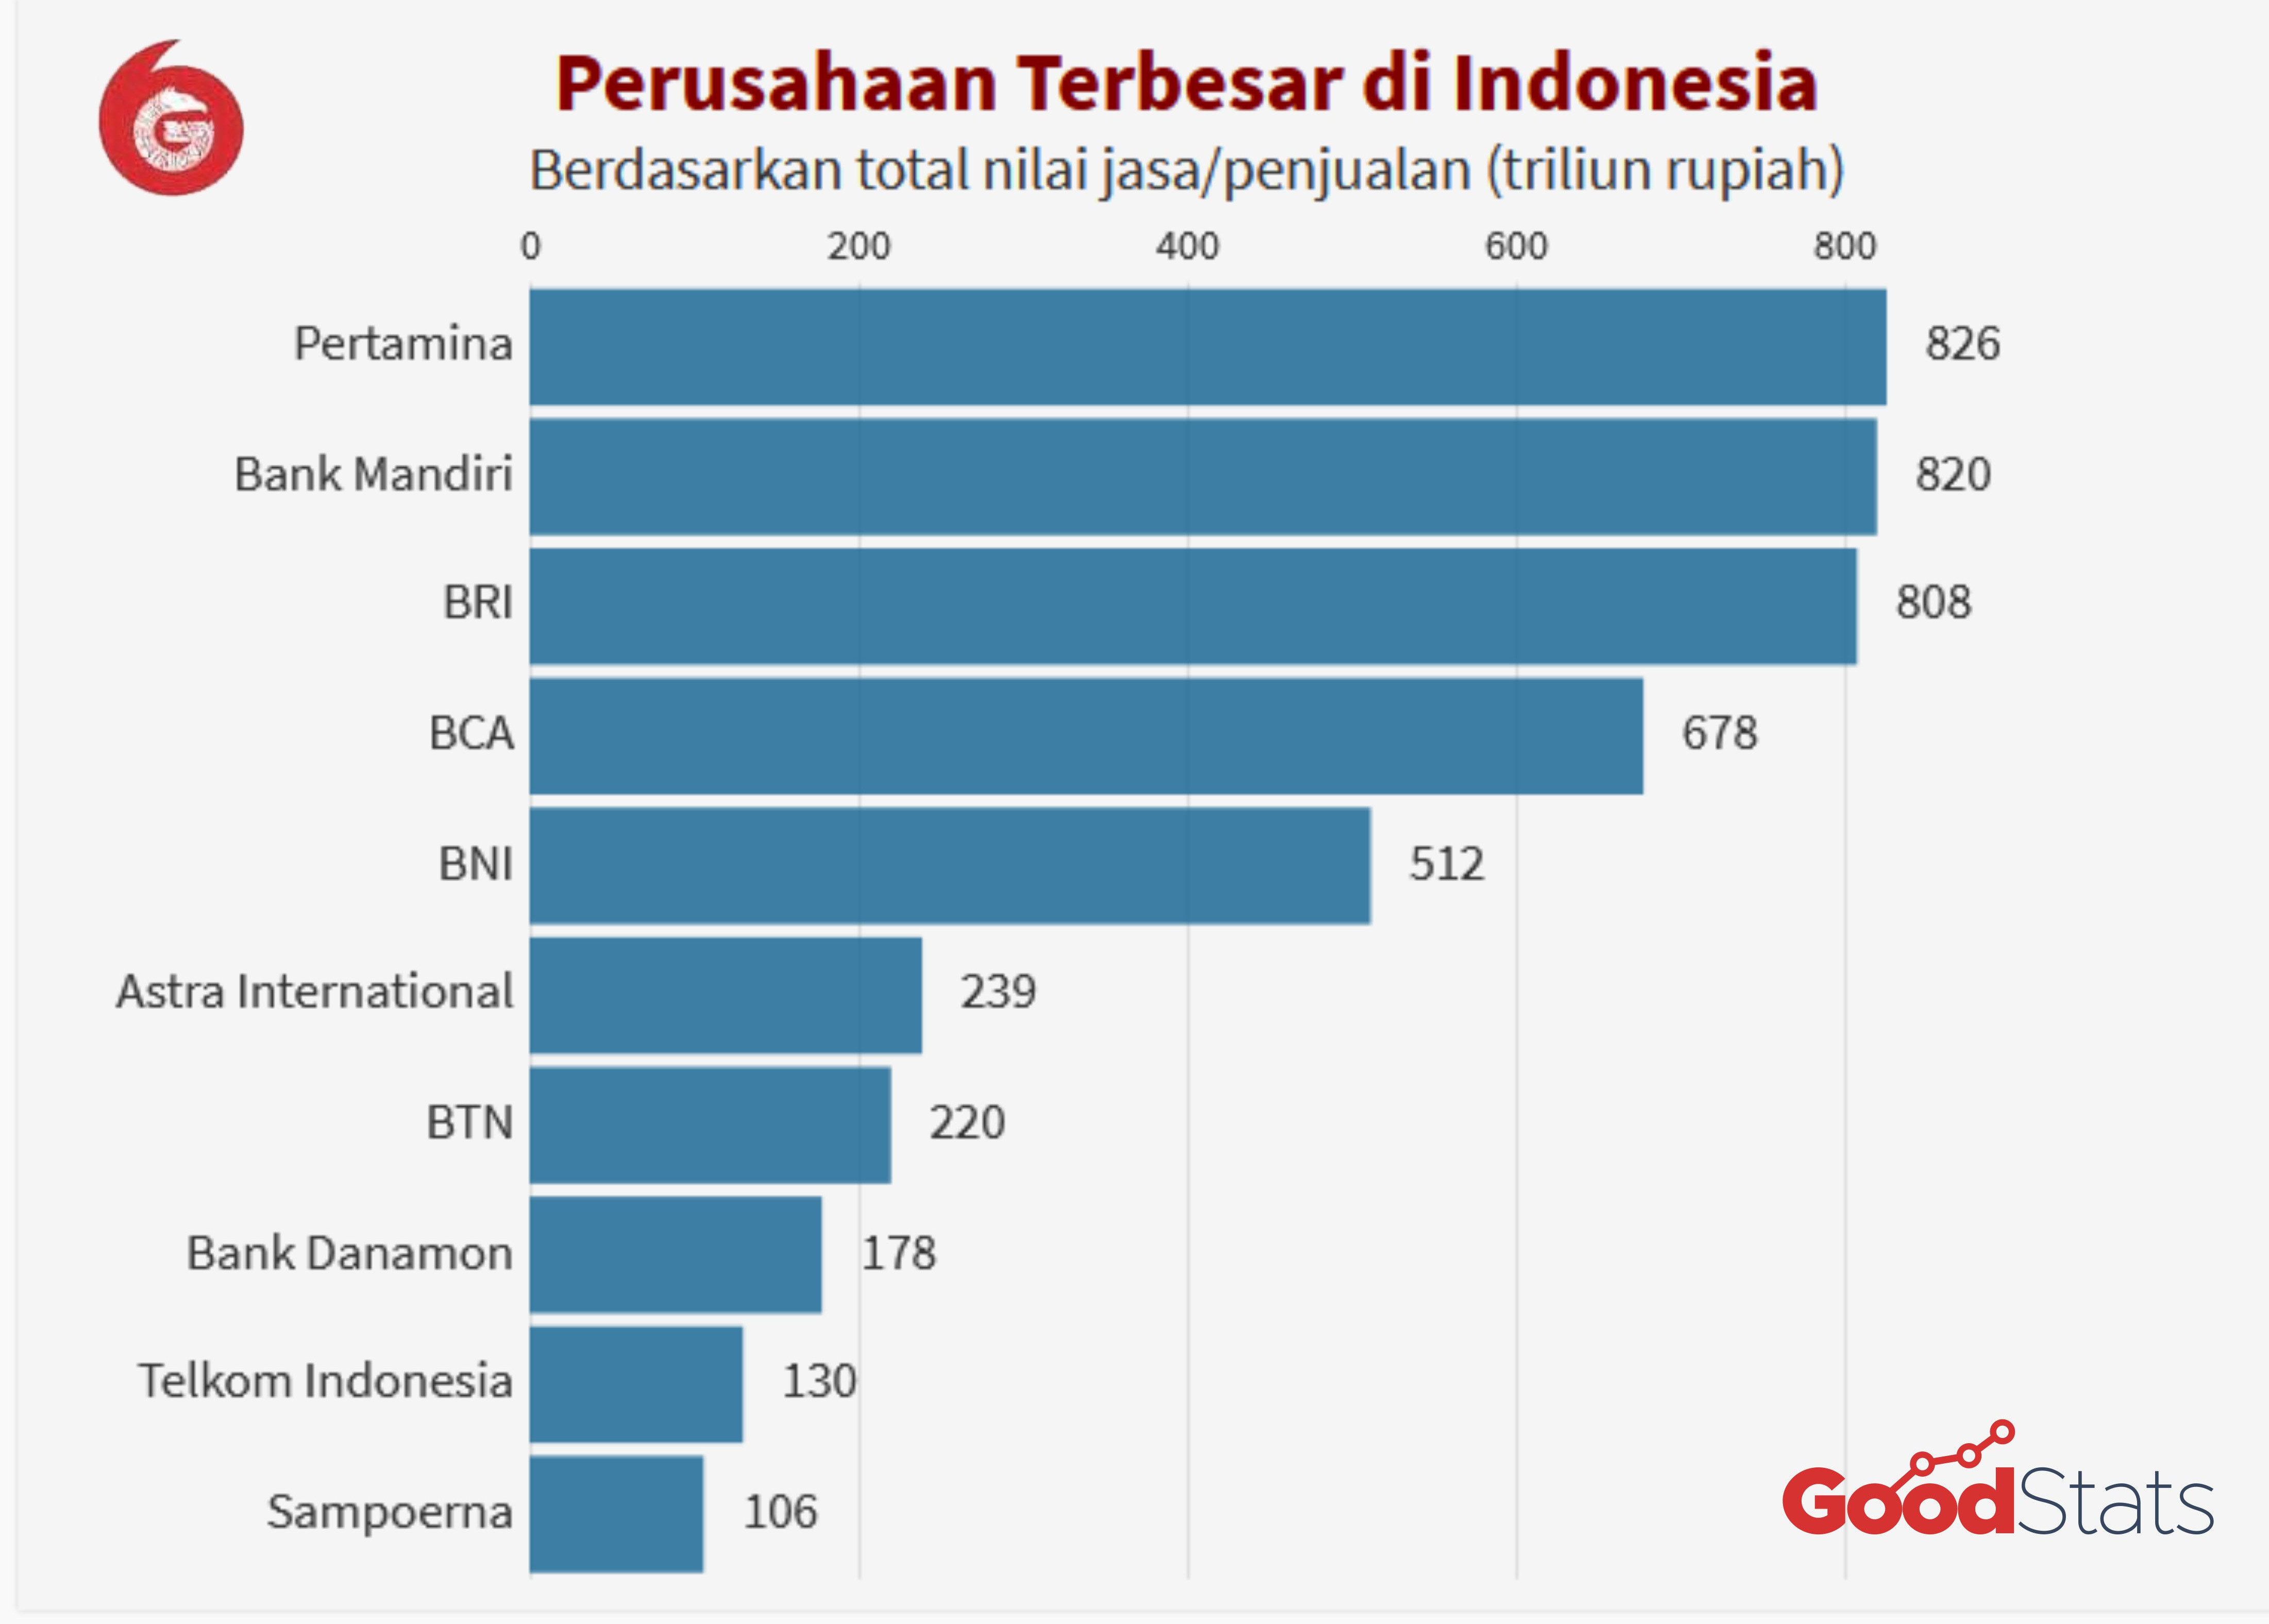 Inilah 10 Perusahaan Terbesar di Indonesia, Pendapatannya Fantastis!